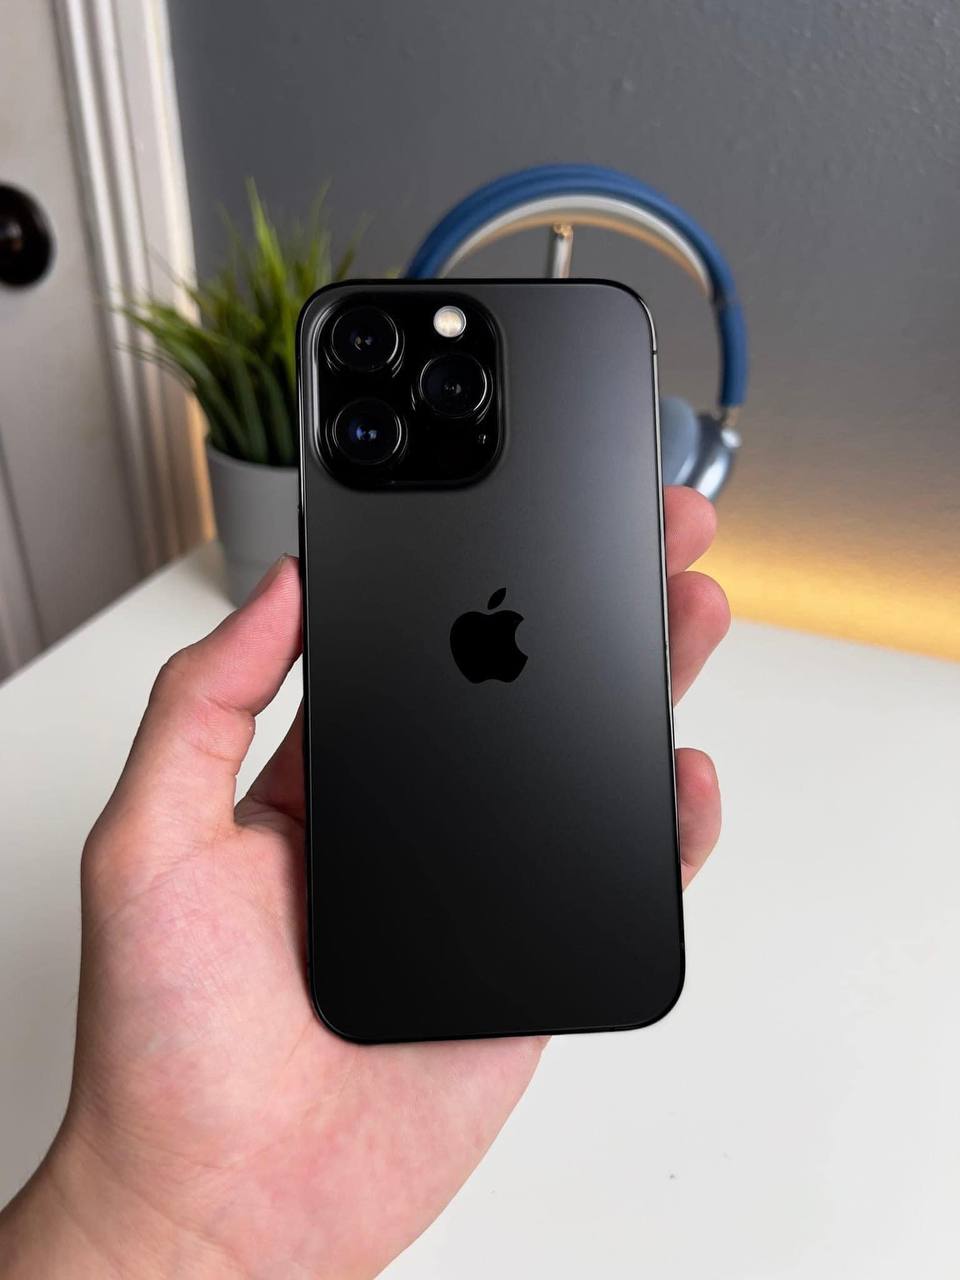 Thiết kế iPhone 14 Pro sẽ là một điều đáng mong đợi với những người yêu thích công nghệ. Nhờ vào sự kết hợp giữa kính và kim loại, iPhone 14 Pro đem đến một trải nghiệm mới mẻ và tuyệt vời cho người dùng. Cảm nhận ngay thiết kế của iPhone 14 Pro qua ảnh liên quan.